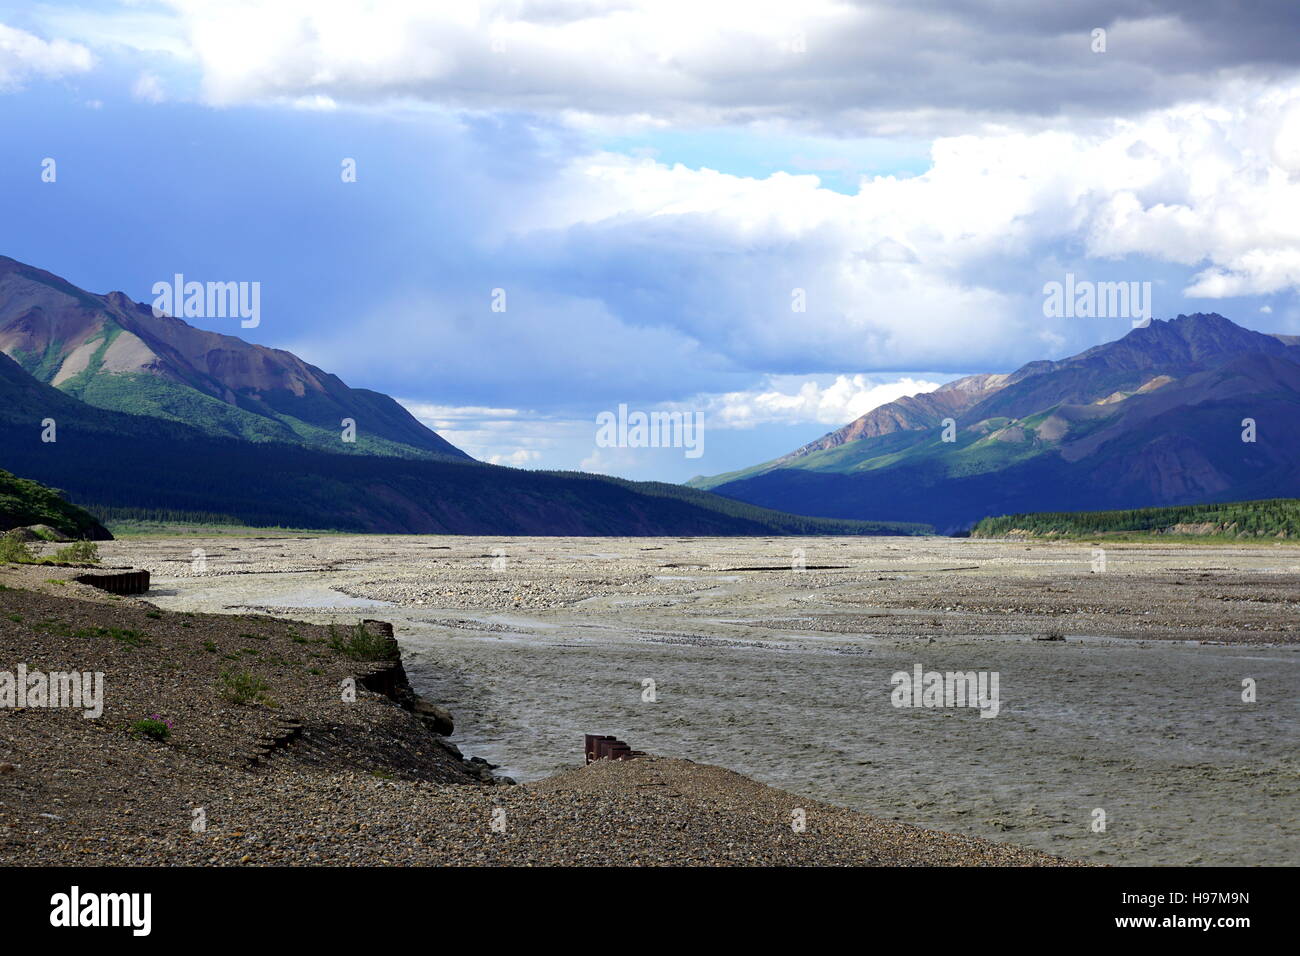 Le parc national Denali et préserver (mont Mckinley), Alaska Banque D'Images